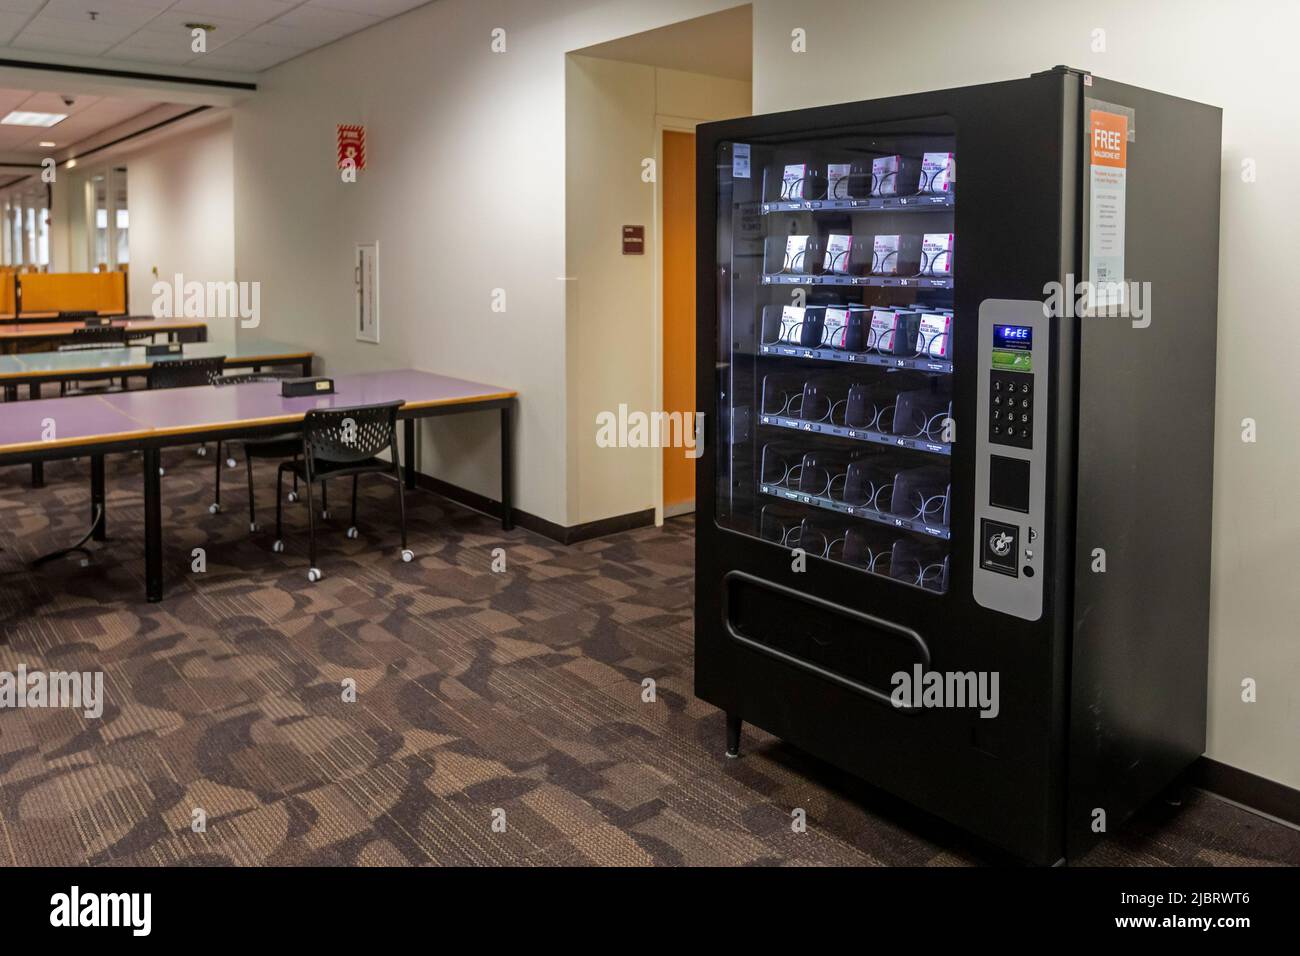 Detroit, Michigan - Un distributeur automatique dans la bibliothèque de premier cycle de l'université d'État de Wayne distribue des paquets gratuits de Narcan (naloxone), qui peut pr Banque D'Images